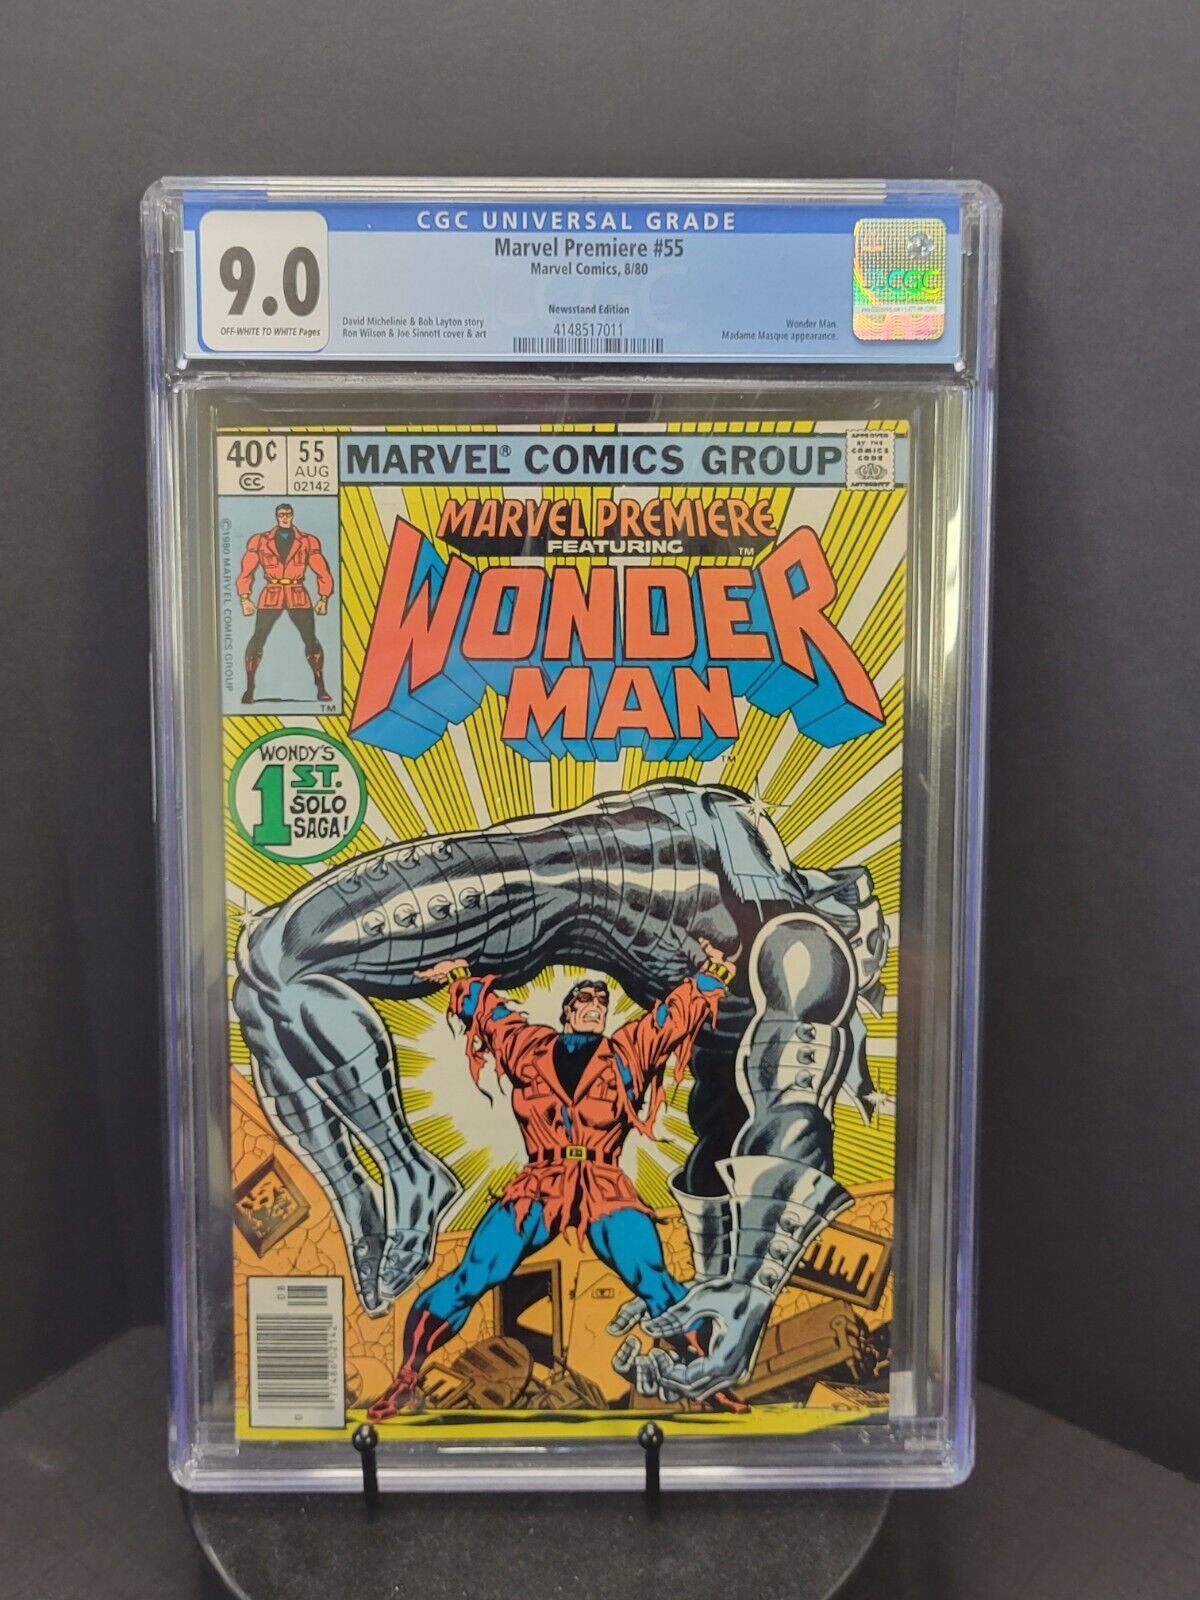 Marvel Premier #55 Wonder Man First Solo Saga, CGC 9.0 Newstand 